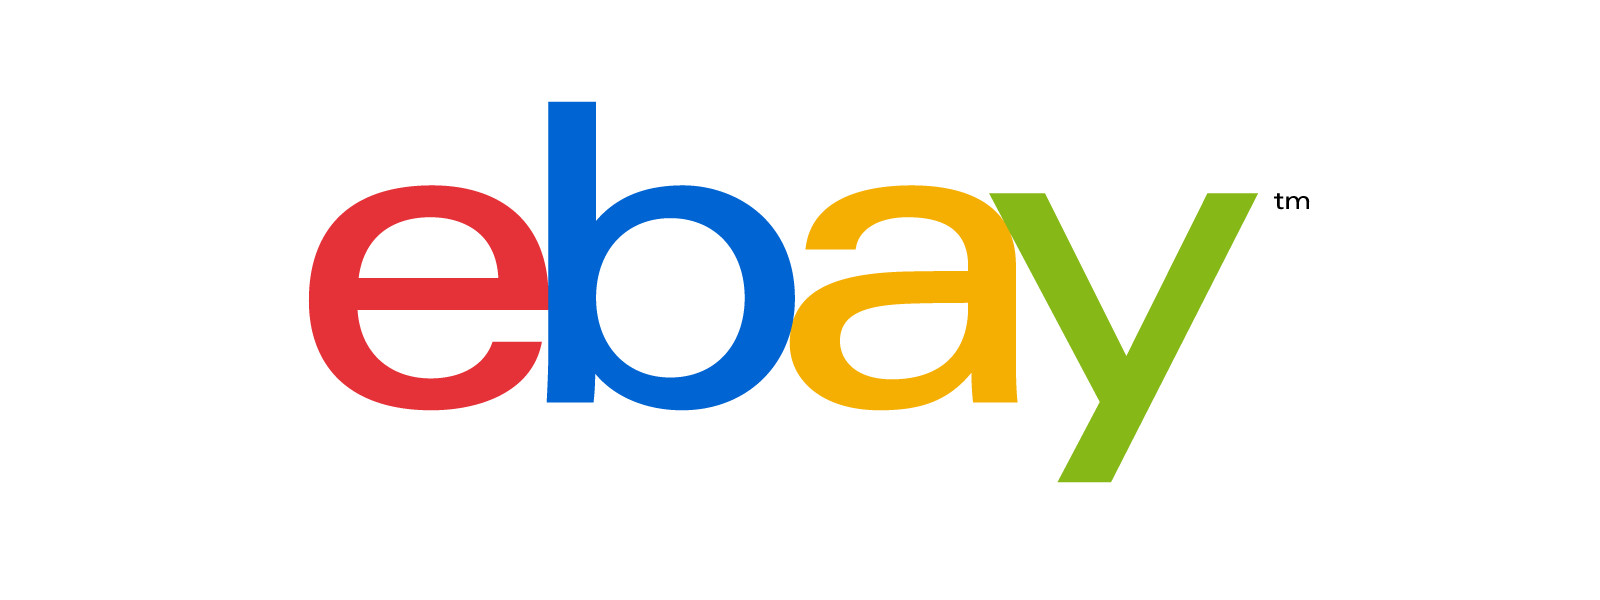 eBay Plus: Gratis-WLAN in Einkaufsstraßen